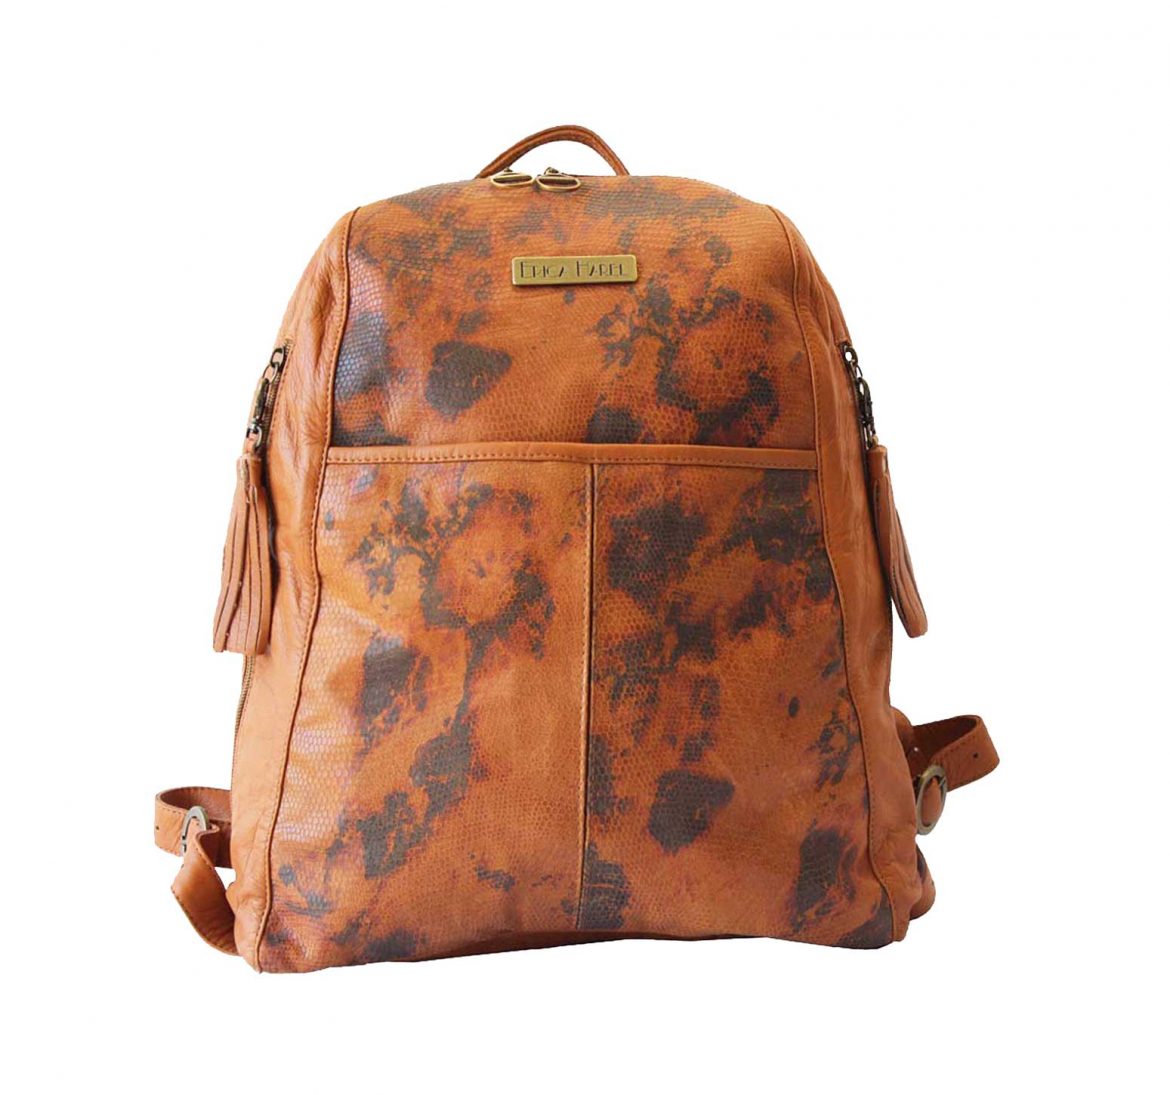 soft-camel-leather-backpack - Erica Harel